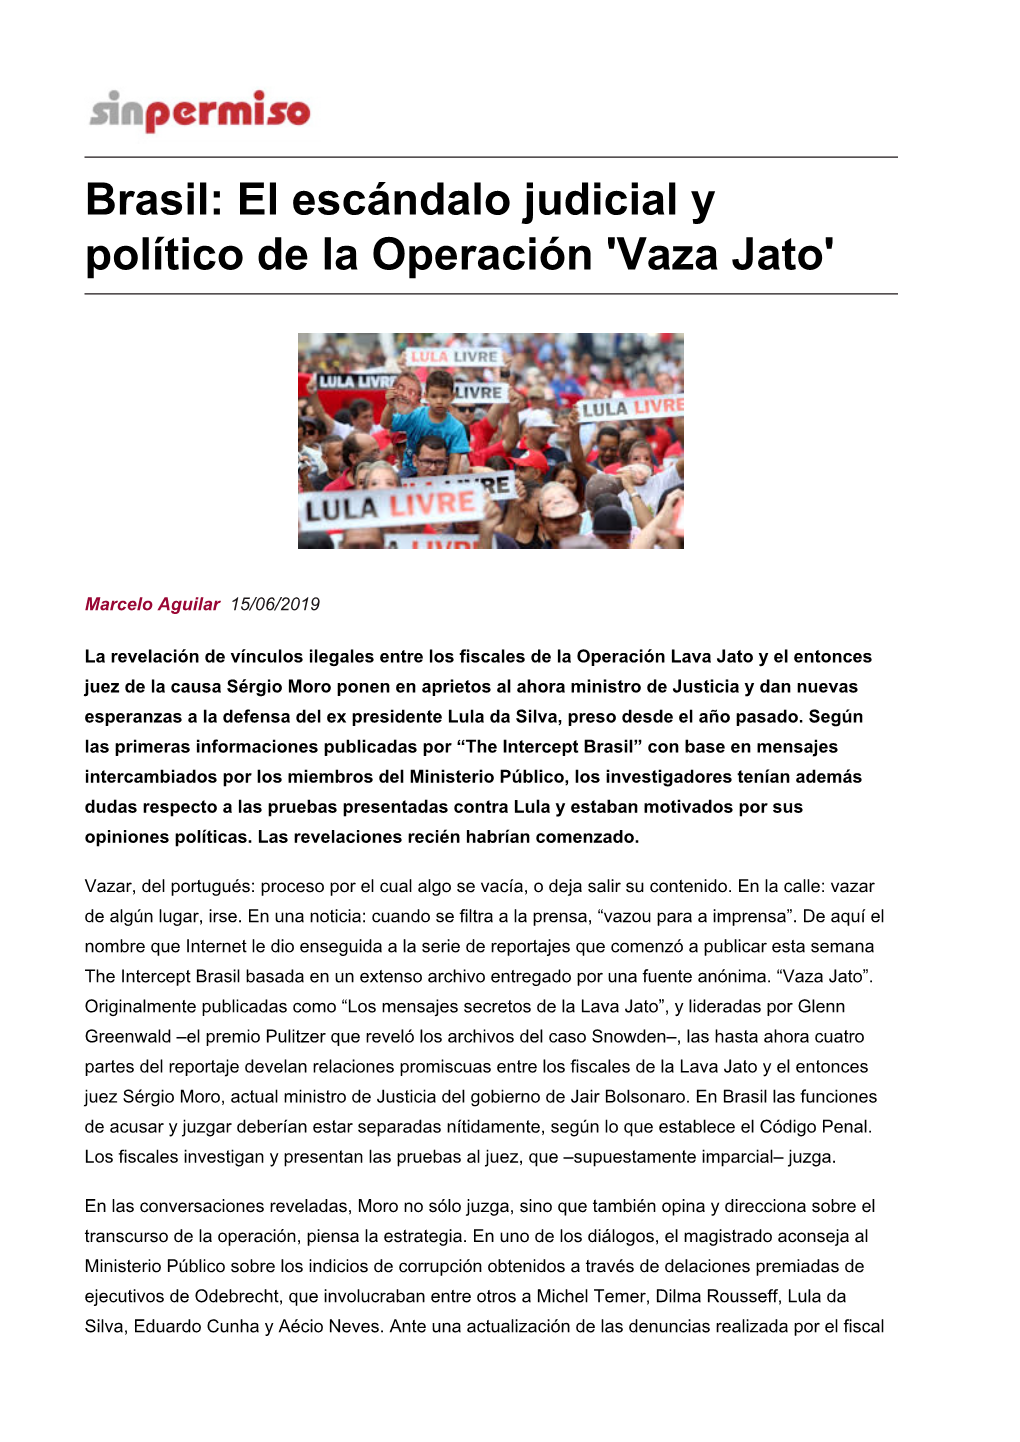 Brasil: El Escándalo Judicial Y Político De La Operación 'Vaza Jato'